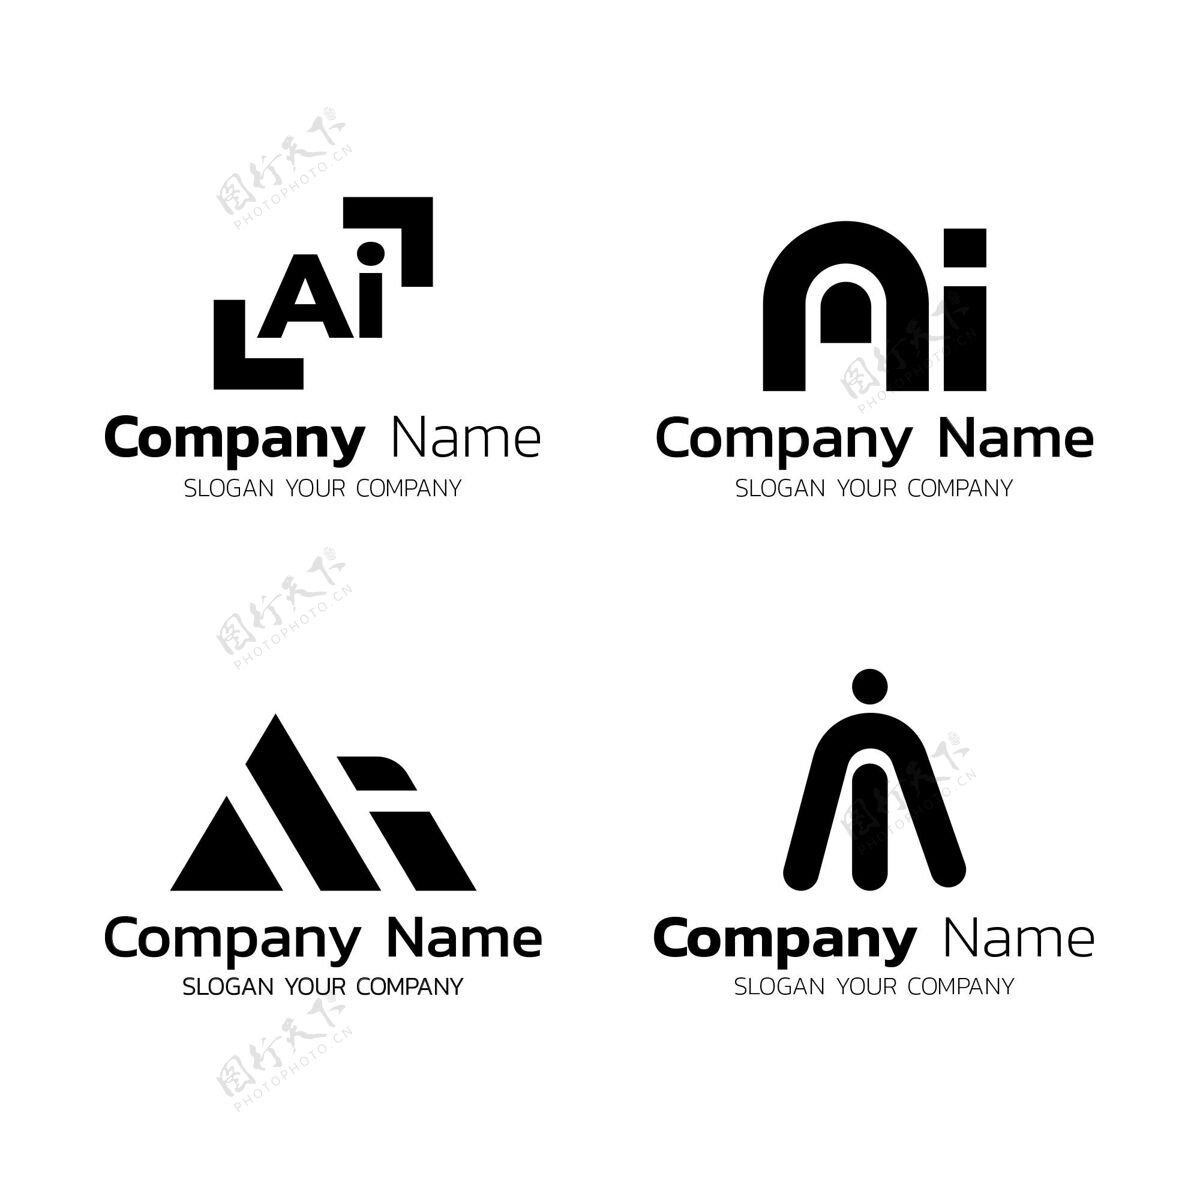 商标平面设计ai标志模板包企业品牌公司